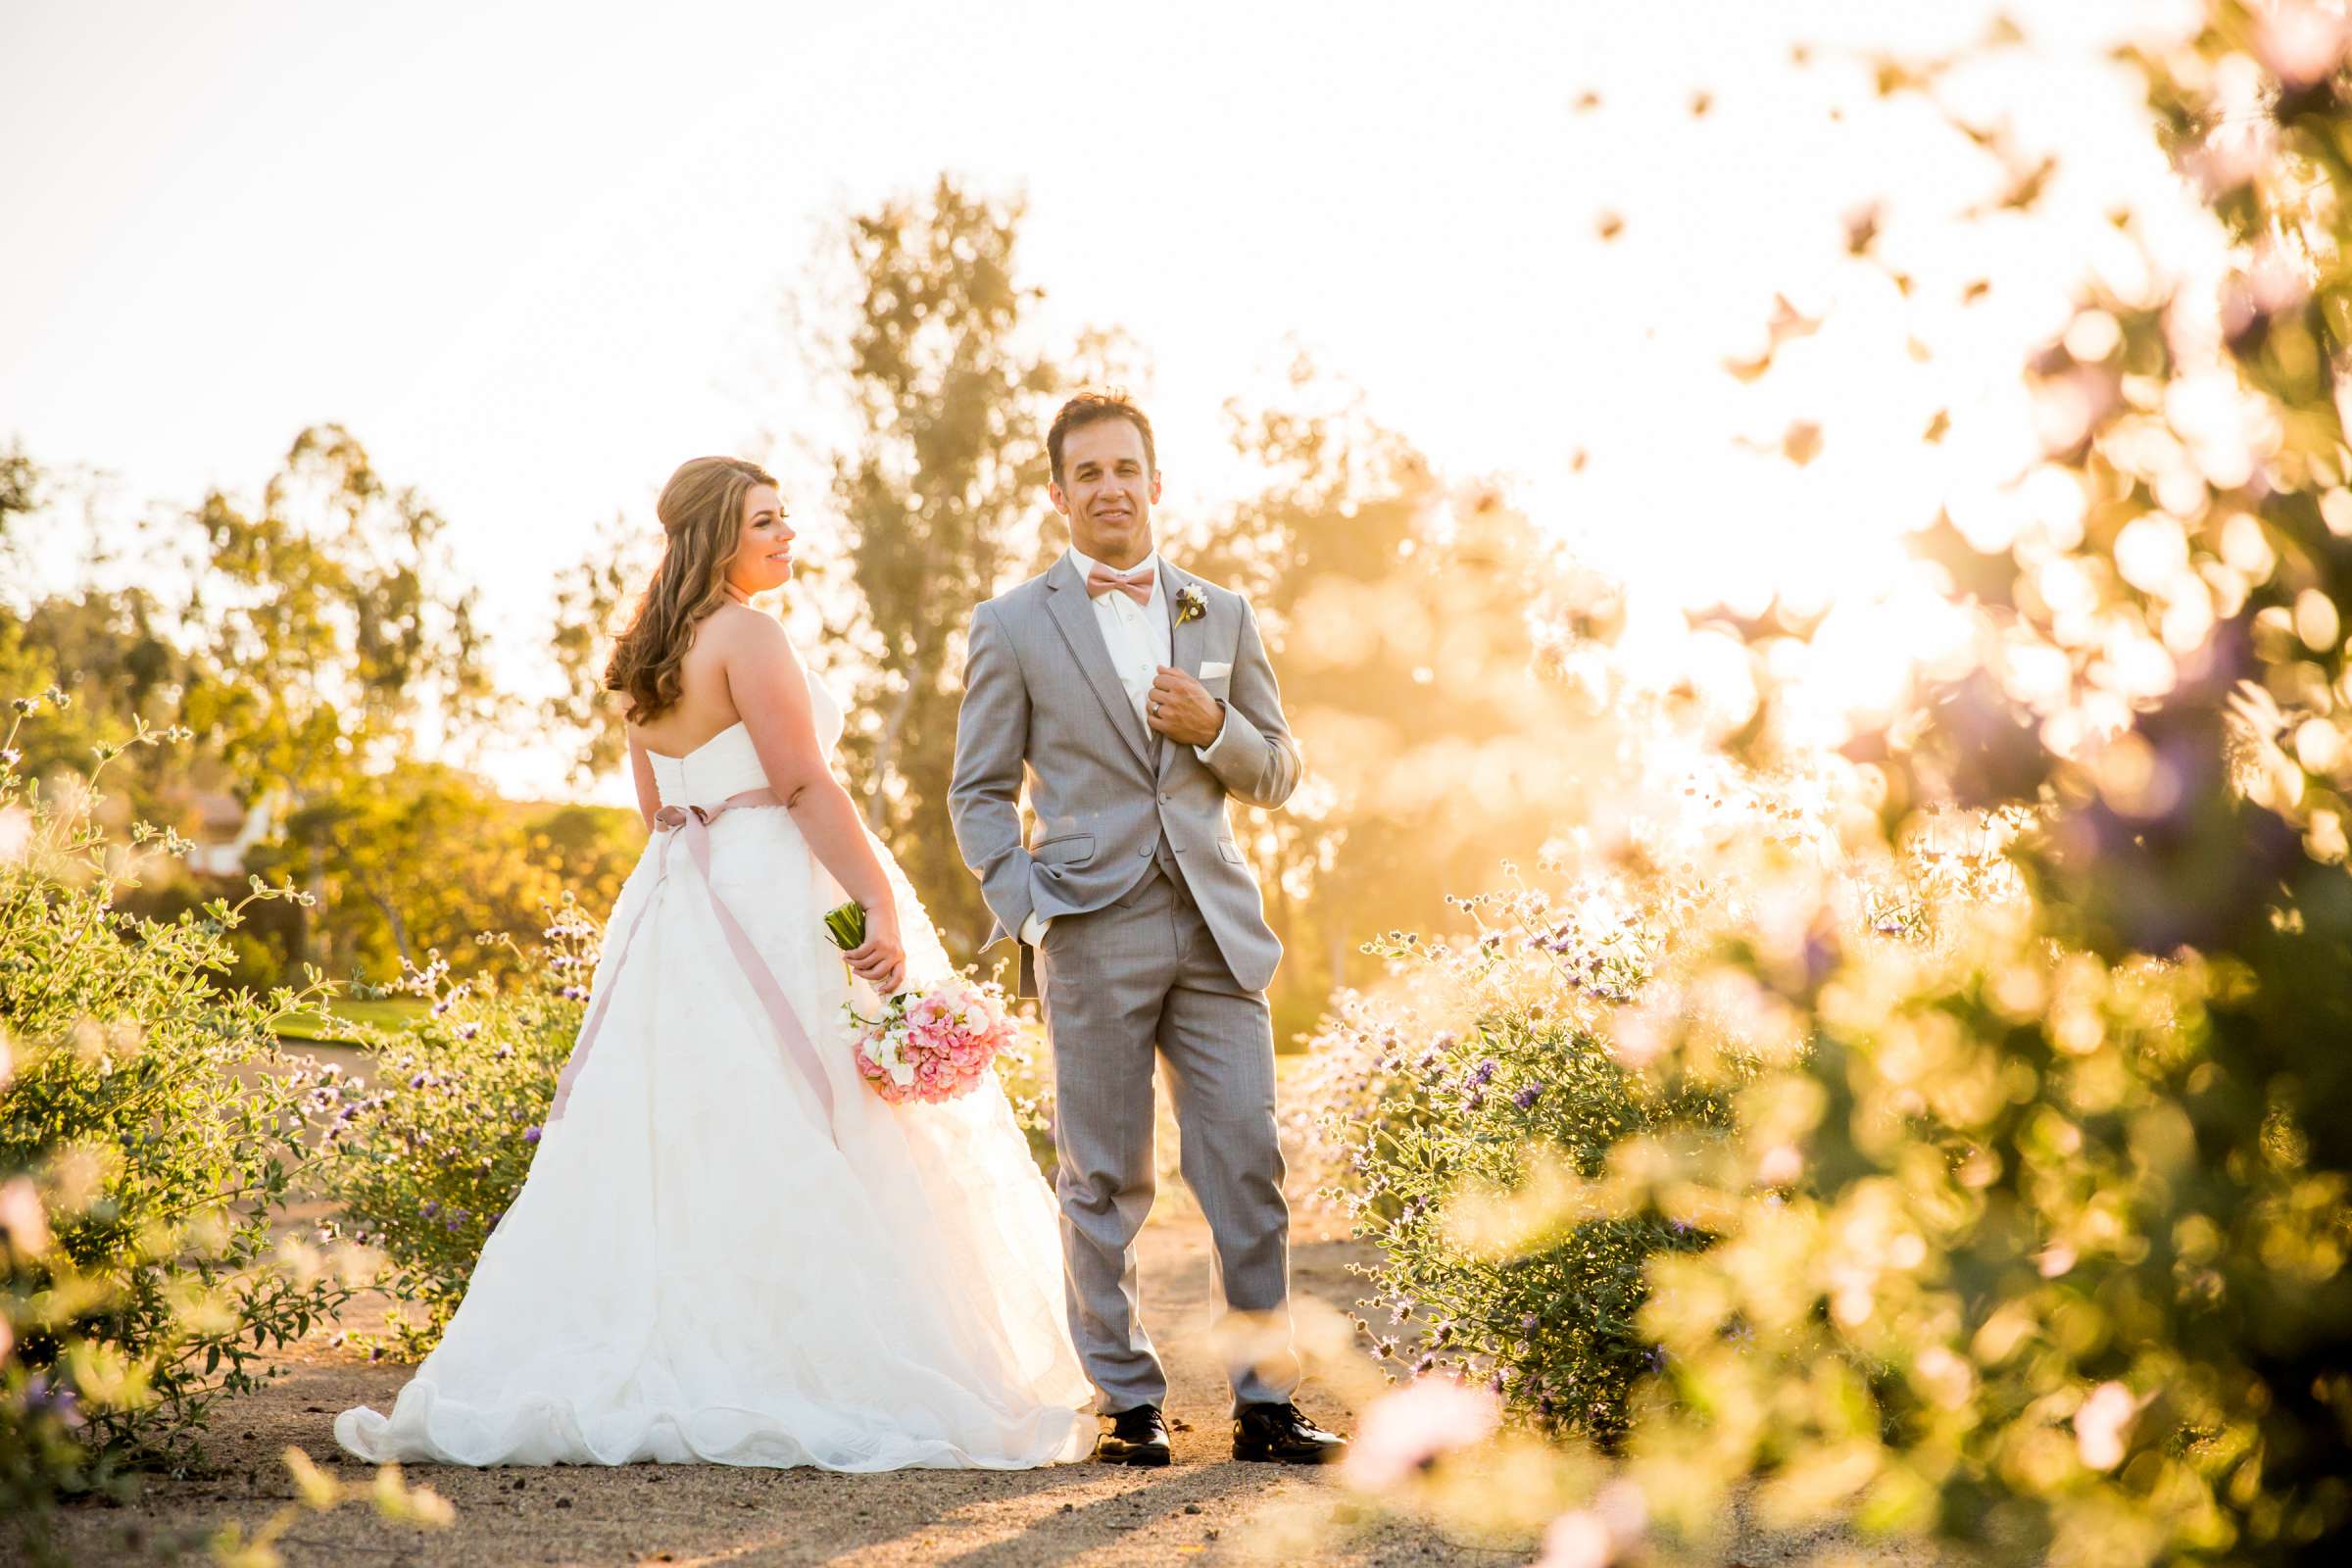 Rancho Santa Fe Golf Club Wedding coordinated by Monarch Weddings, Carolynn and Jon Wedding Photo #3 by True Photography